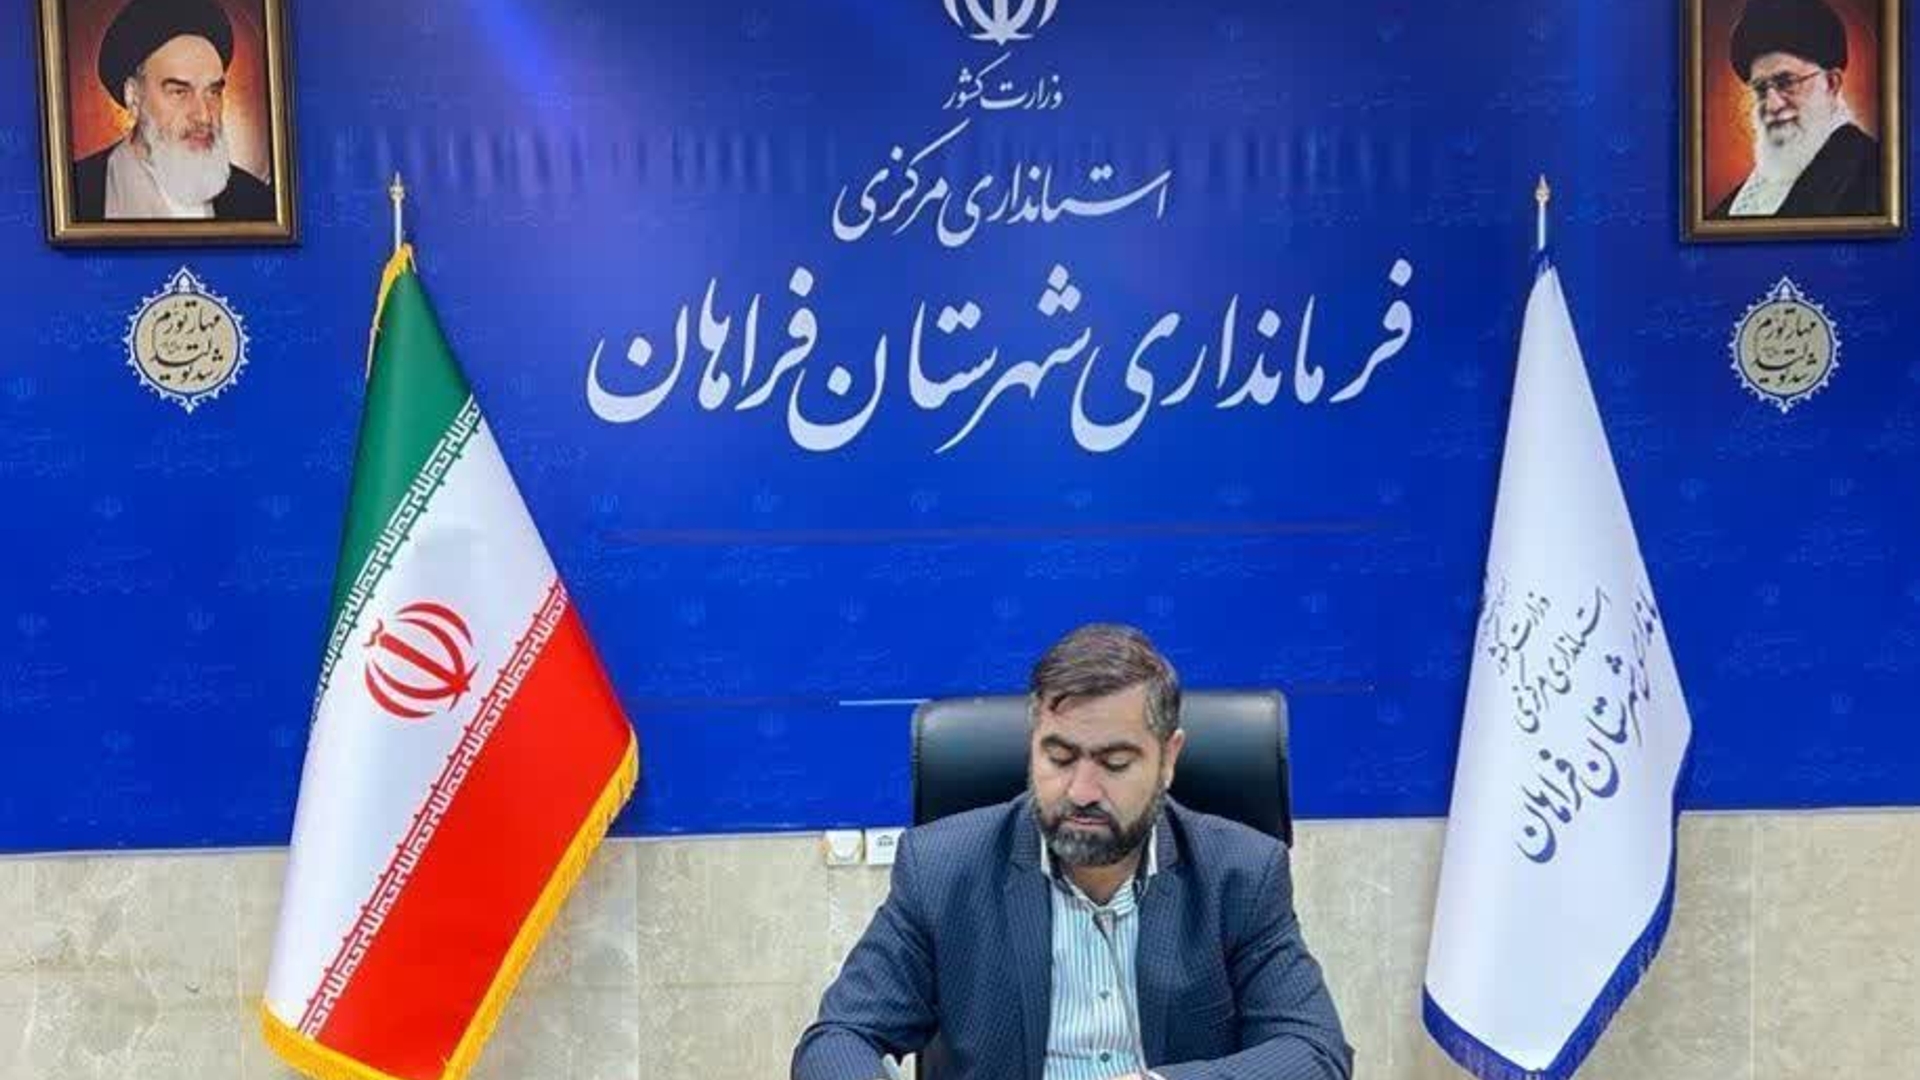 بیانیه فرماندار شهرستان فراهان در پاسخ به حمله تروریستی به بخش کنسولگری سفارت ایران در دمشق